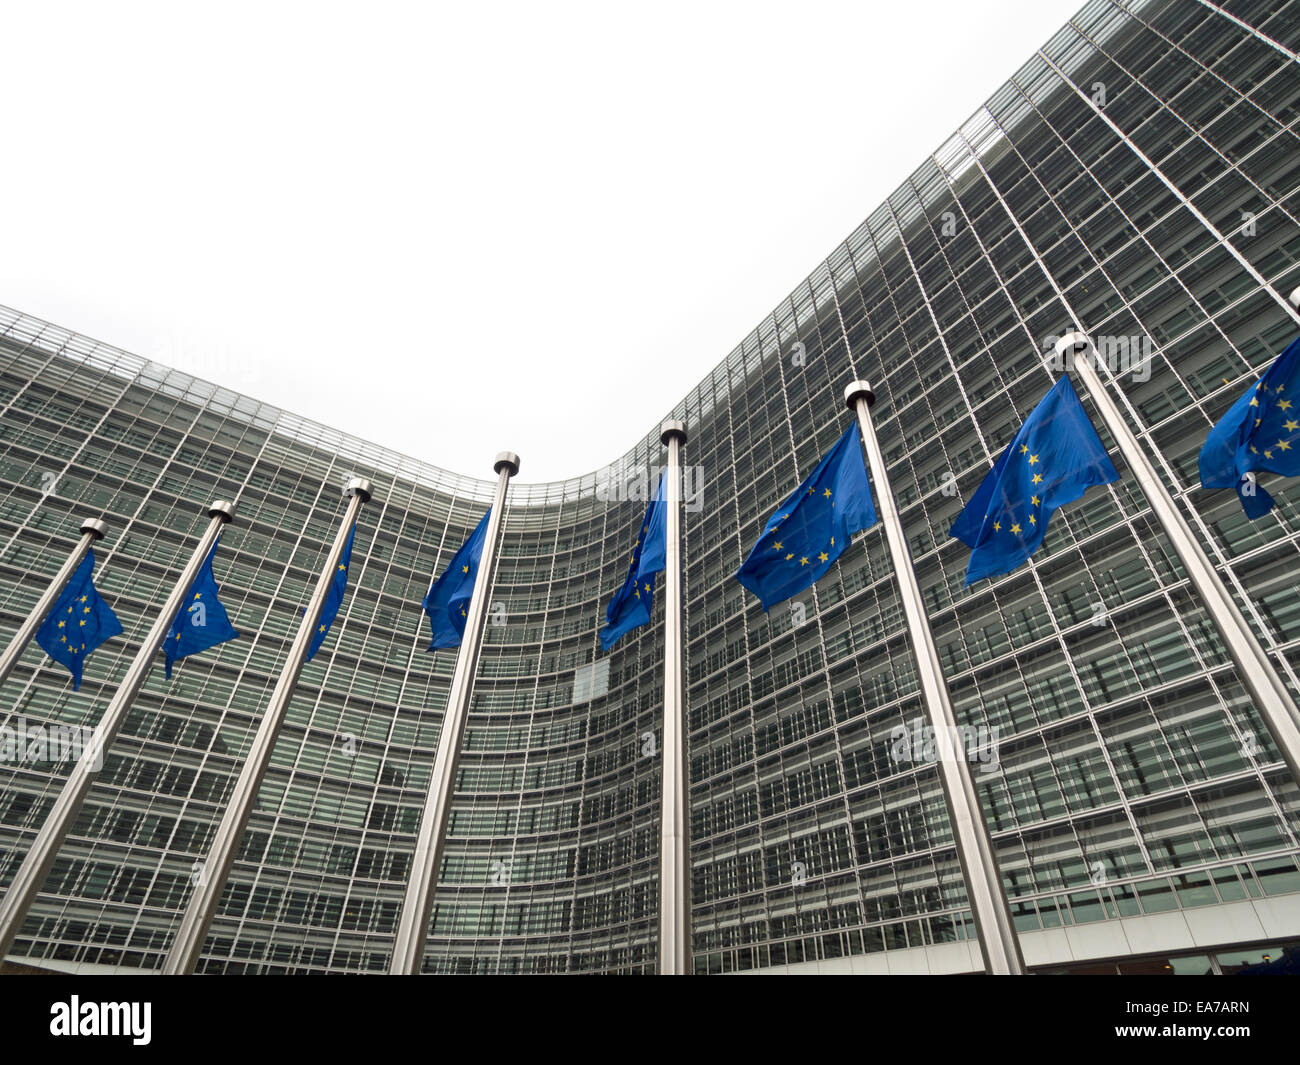 Drapeaux de l'Union européenne devant le bâtiment du Berlaymont, siège de la Commission européenne à Bruxelles, Belgique, Europe Banque D'Images